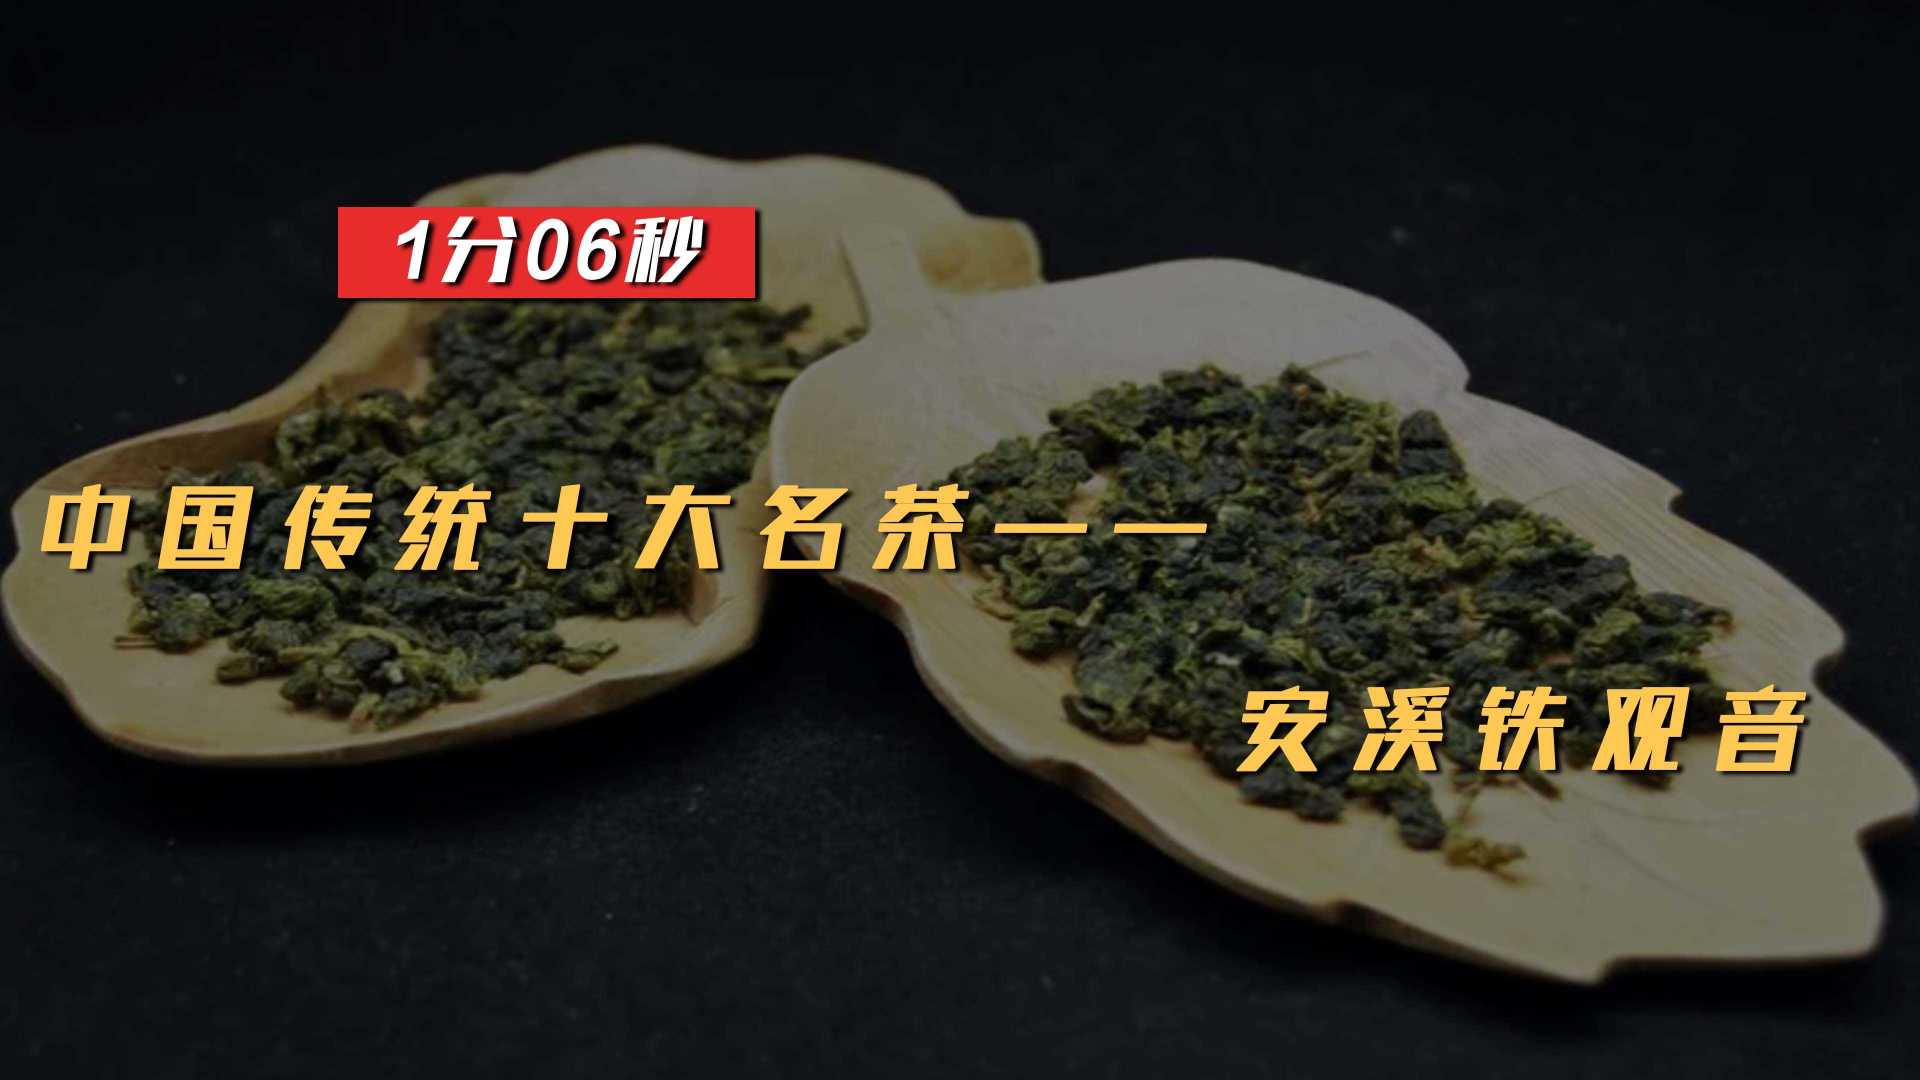 中国传统十大名茶之安溪铁观音